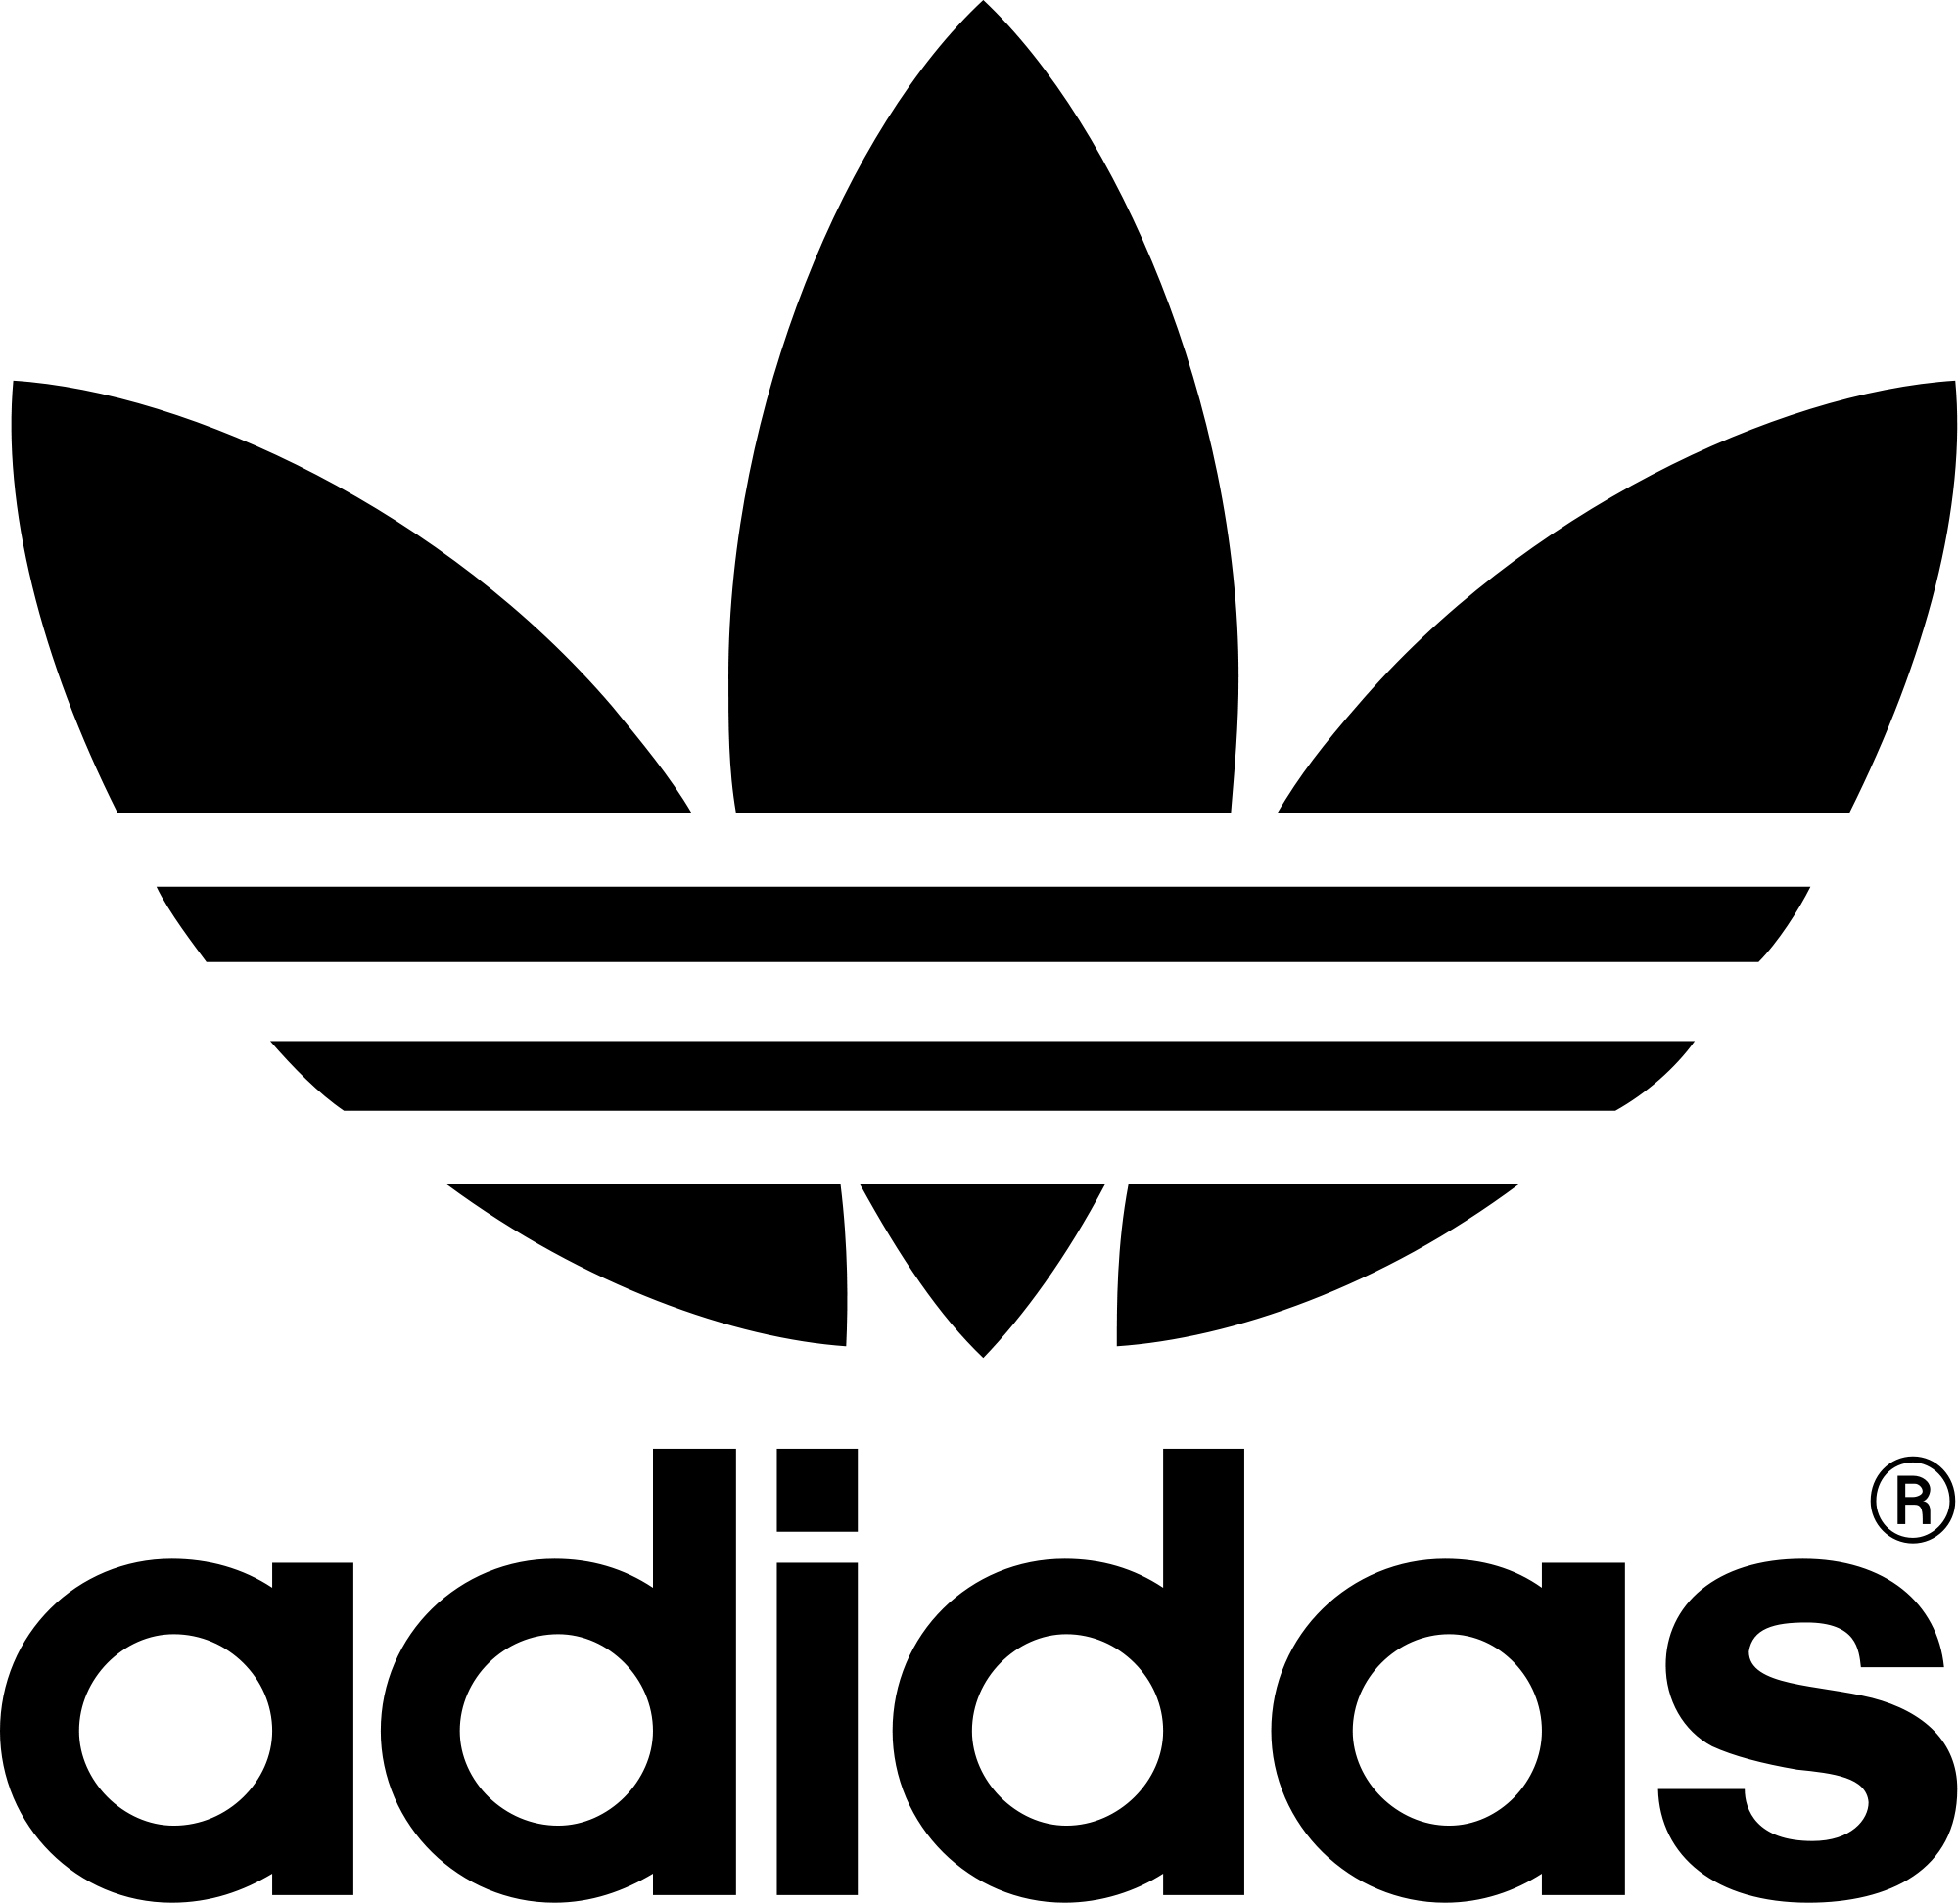 Adidas Logo White Background